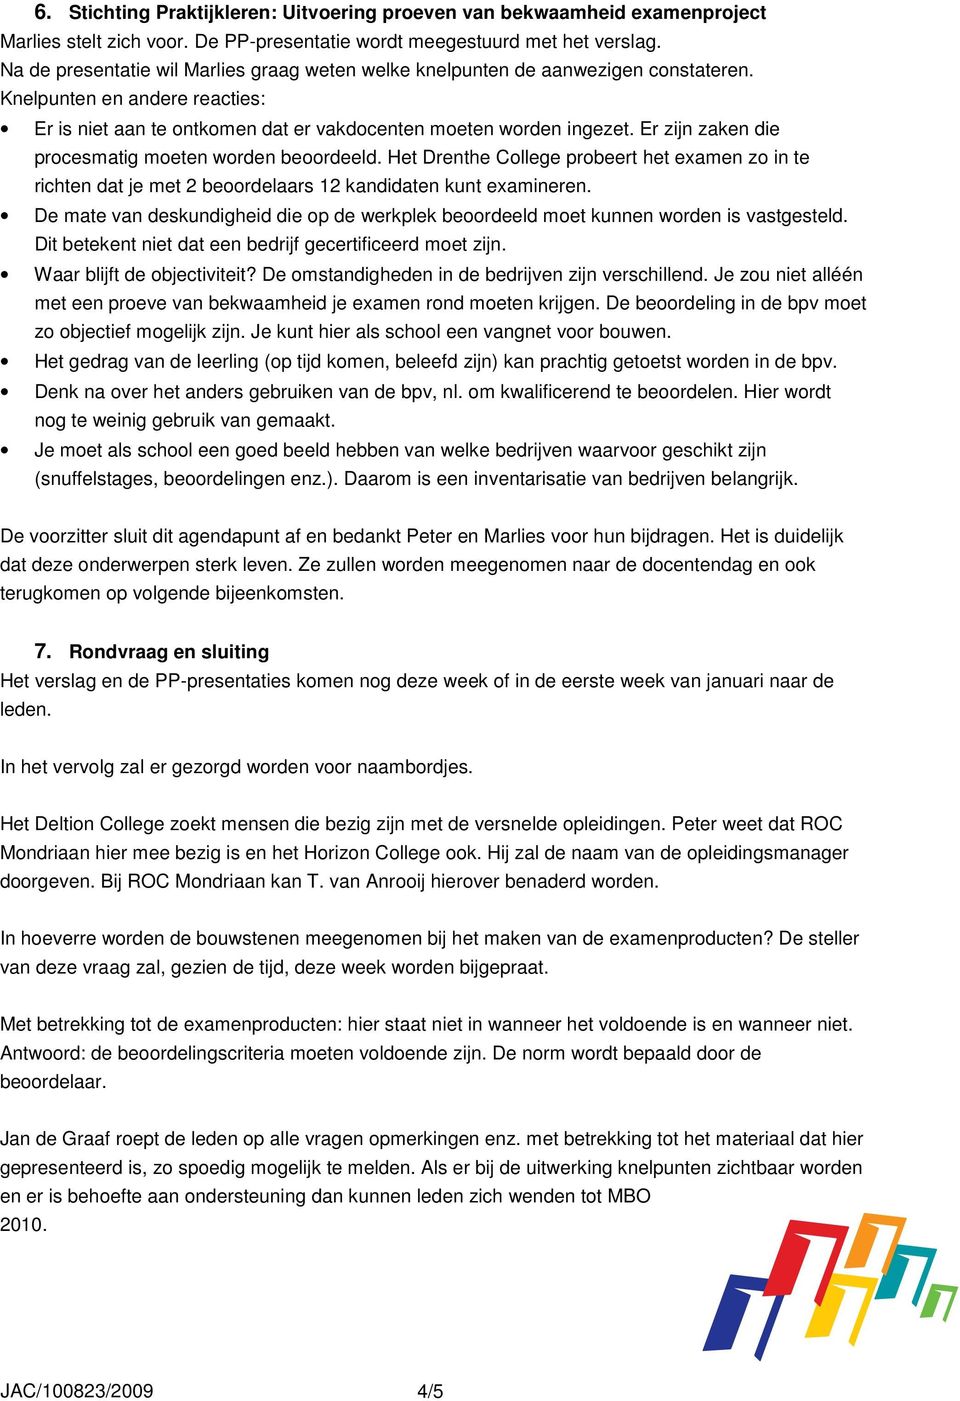 Er zijn zaken die procesmatig moeten worden beoordeeld. Het Drenthe College probeert het examen zo in te richten dat je met 2 beoordelaars 12 kandidaten kunt examineren.